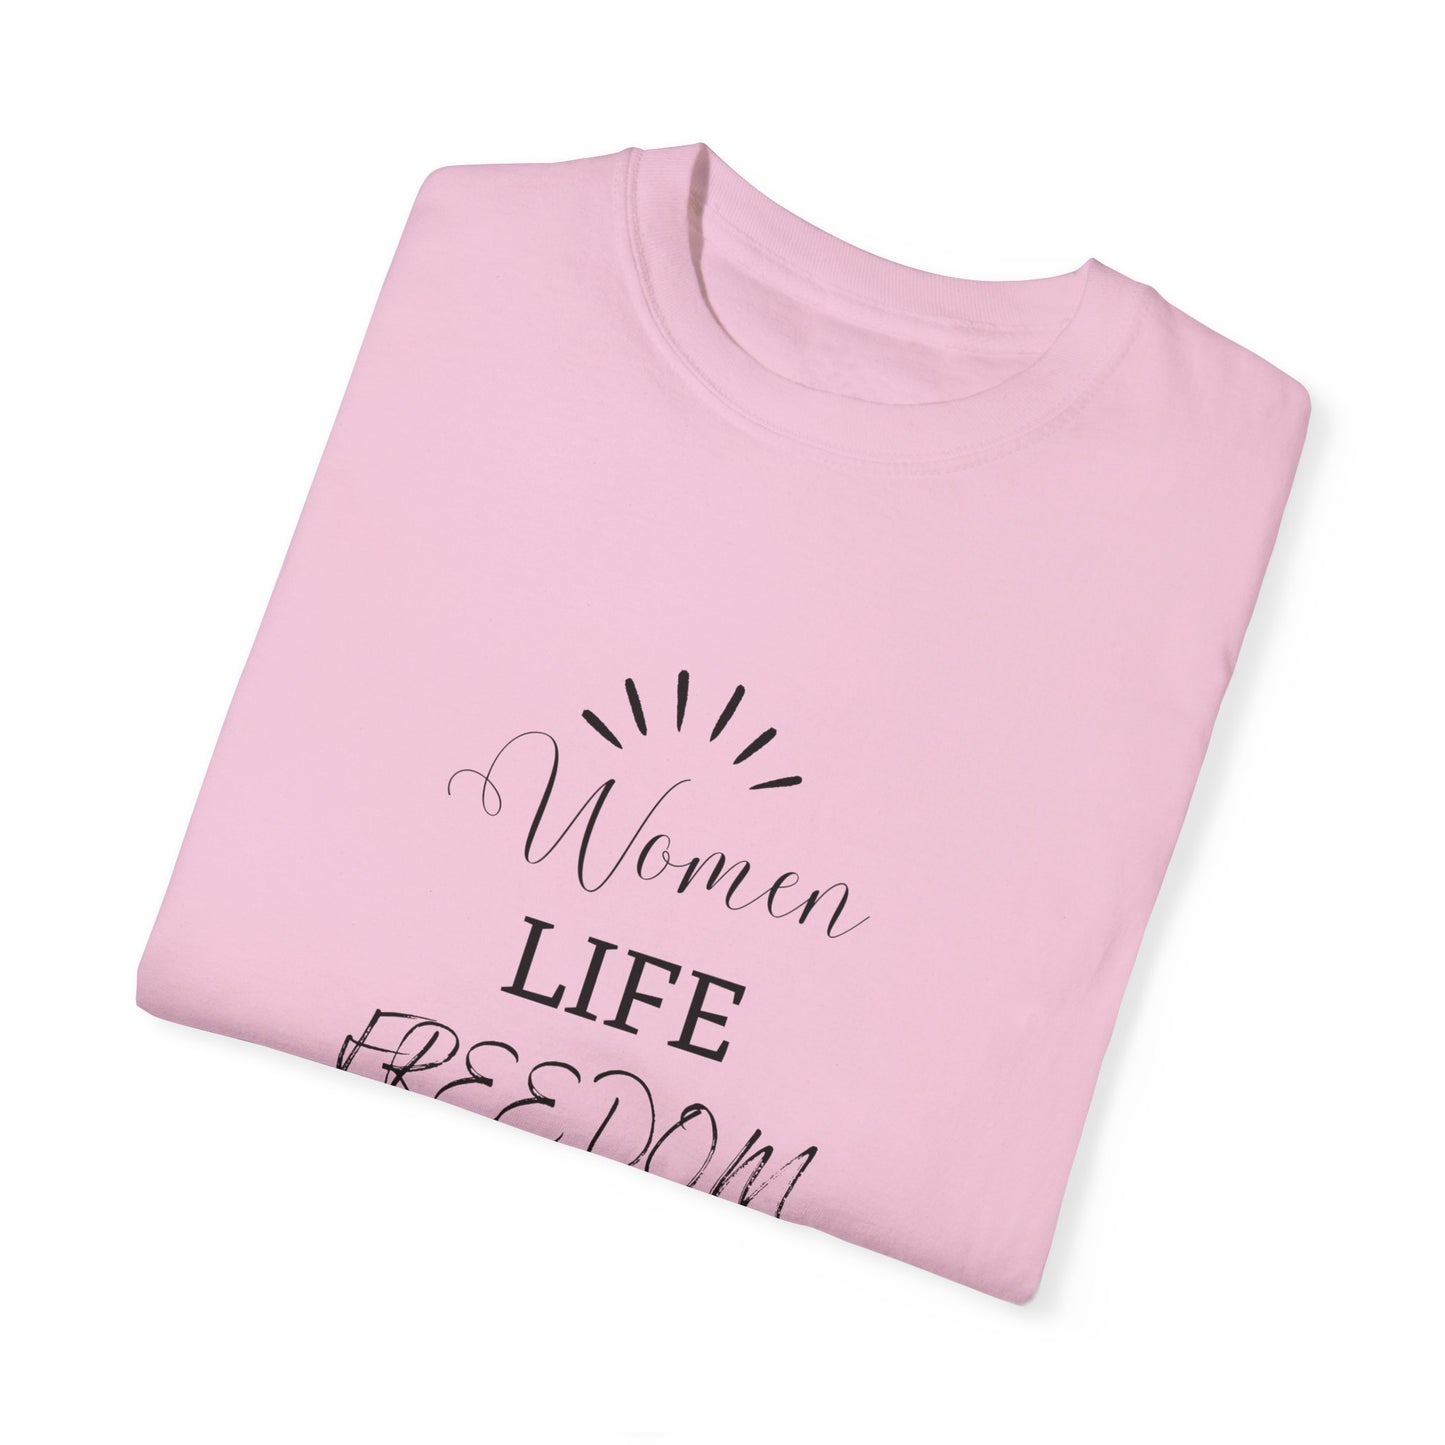 Women Life Freedon New Era  - Unisex Garment-Dyed T-shirt